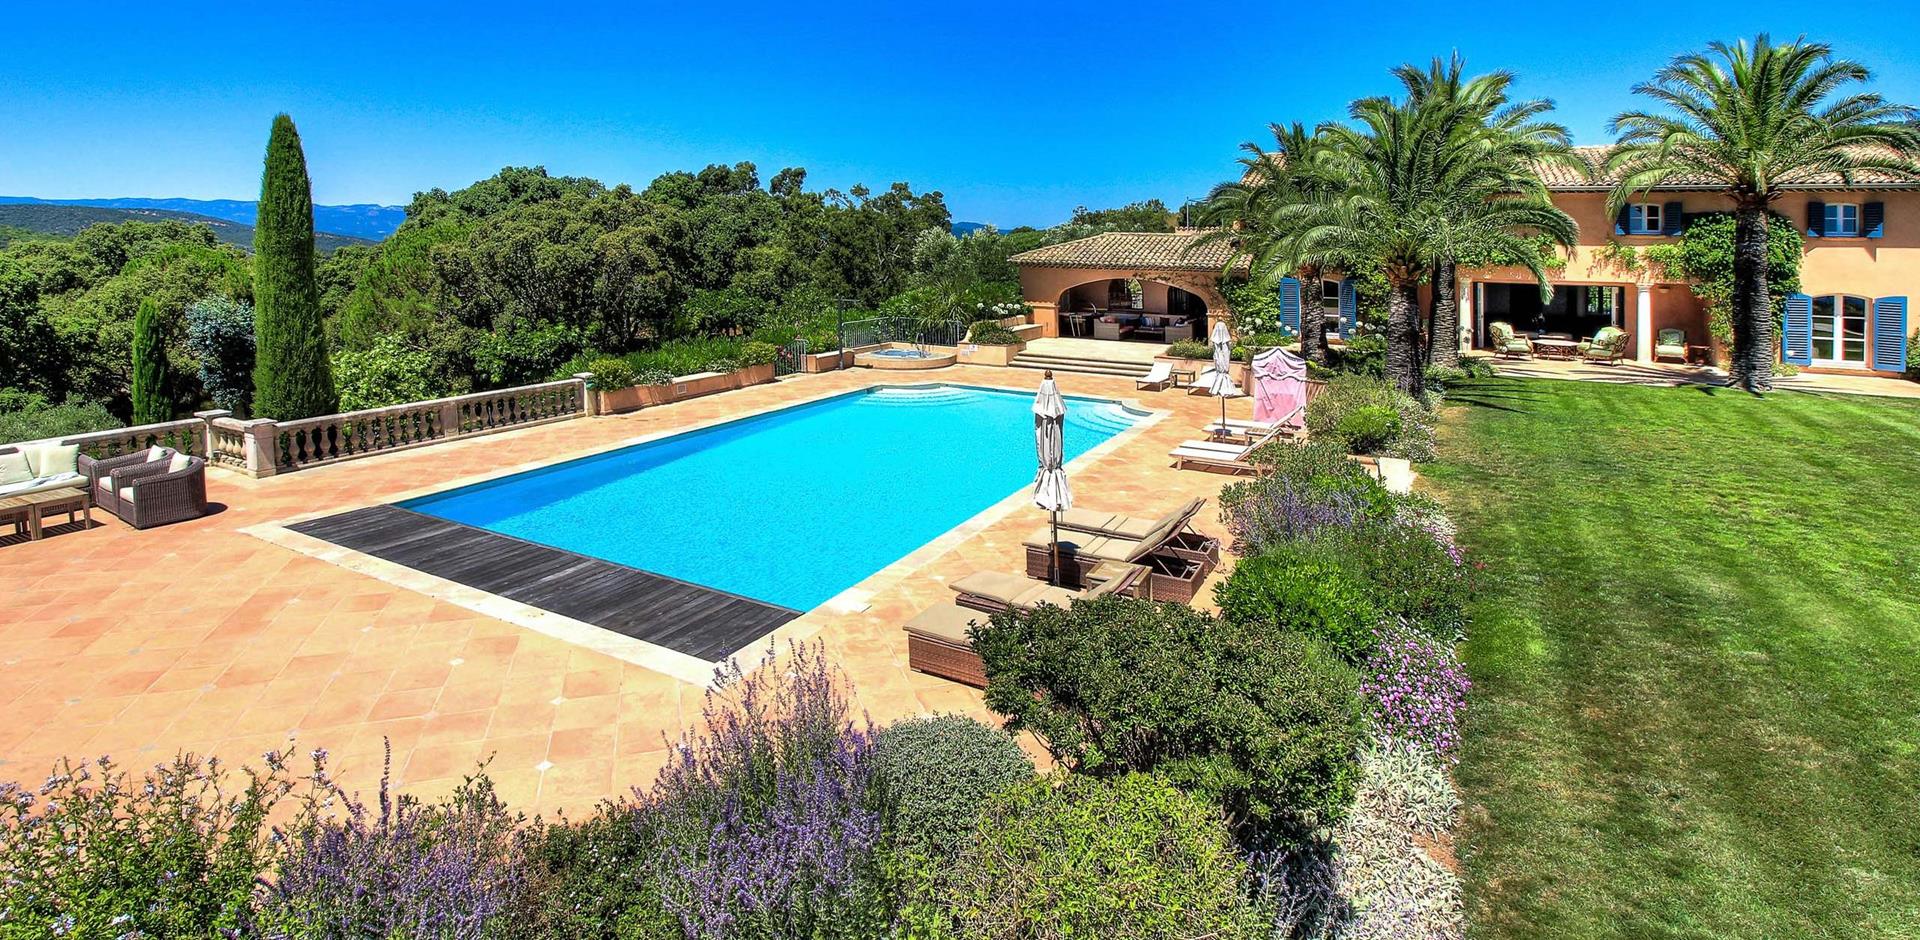 Swimming pool, La Bastide Valmer. St Tropez